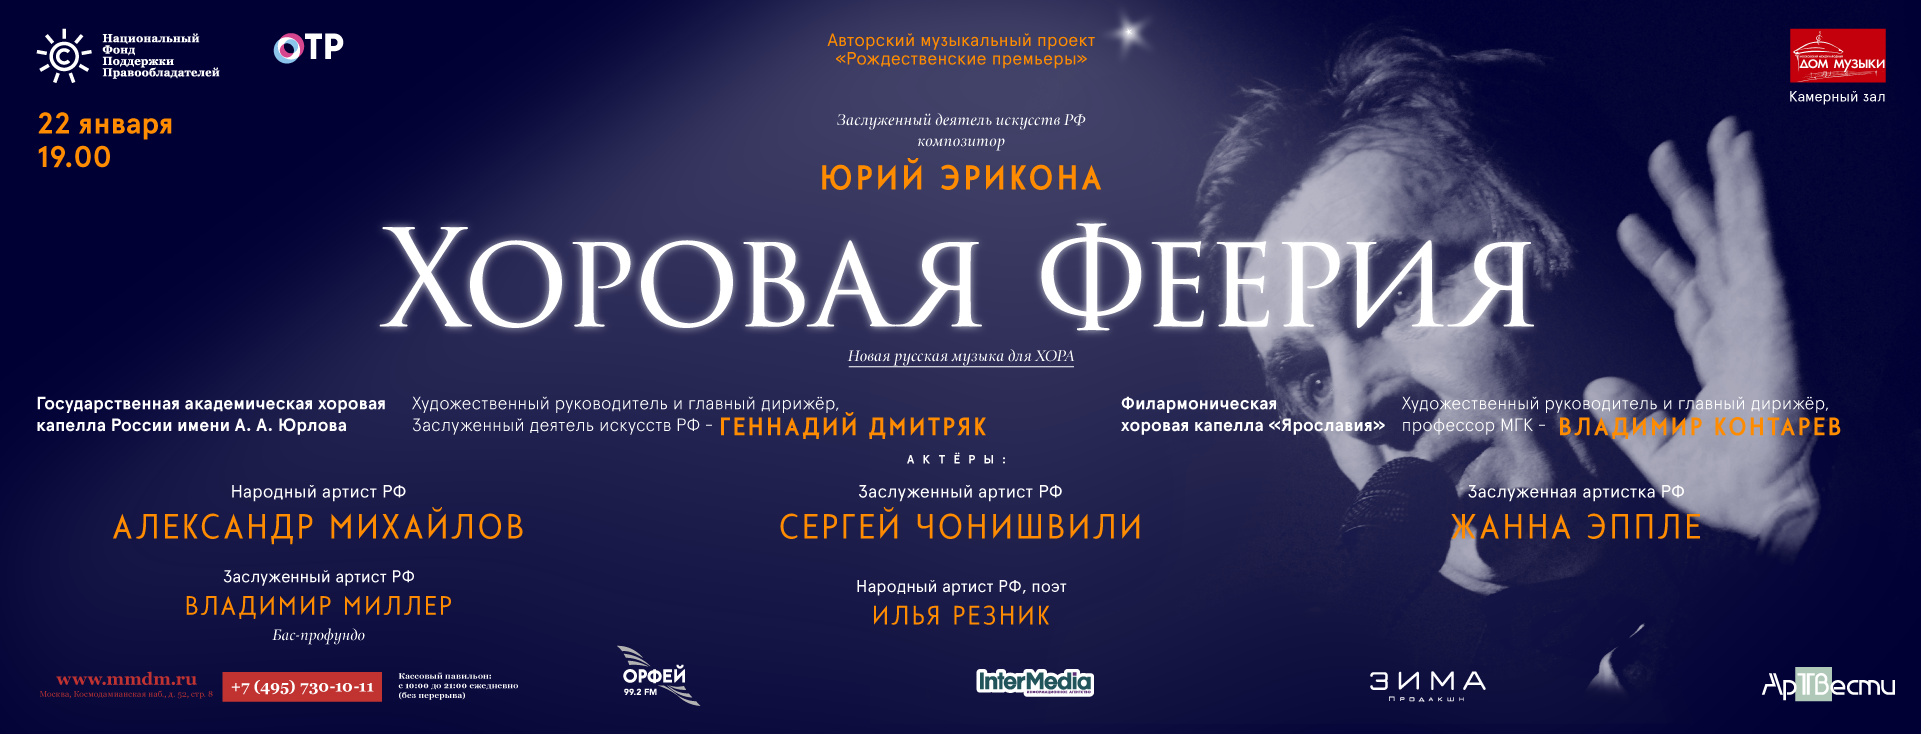 Концерт «Хоровая феерия» пройдет при поддержке НФПП